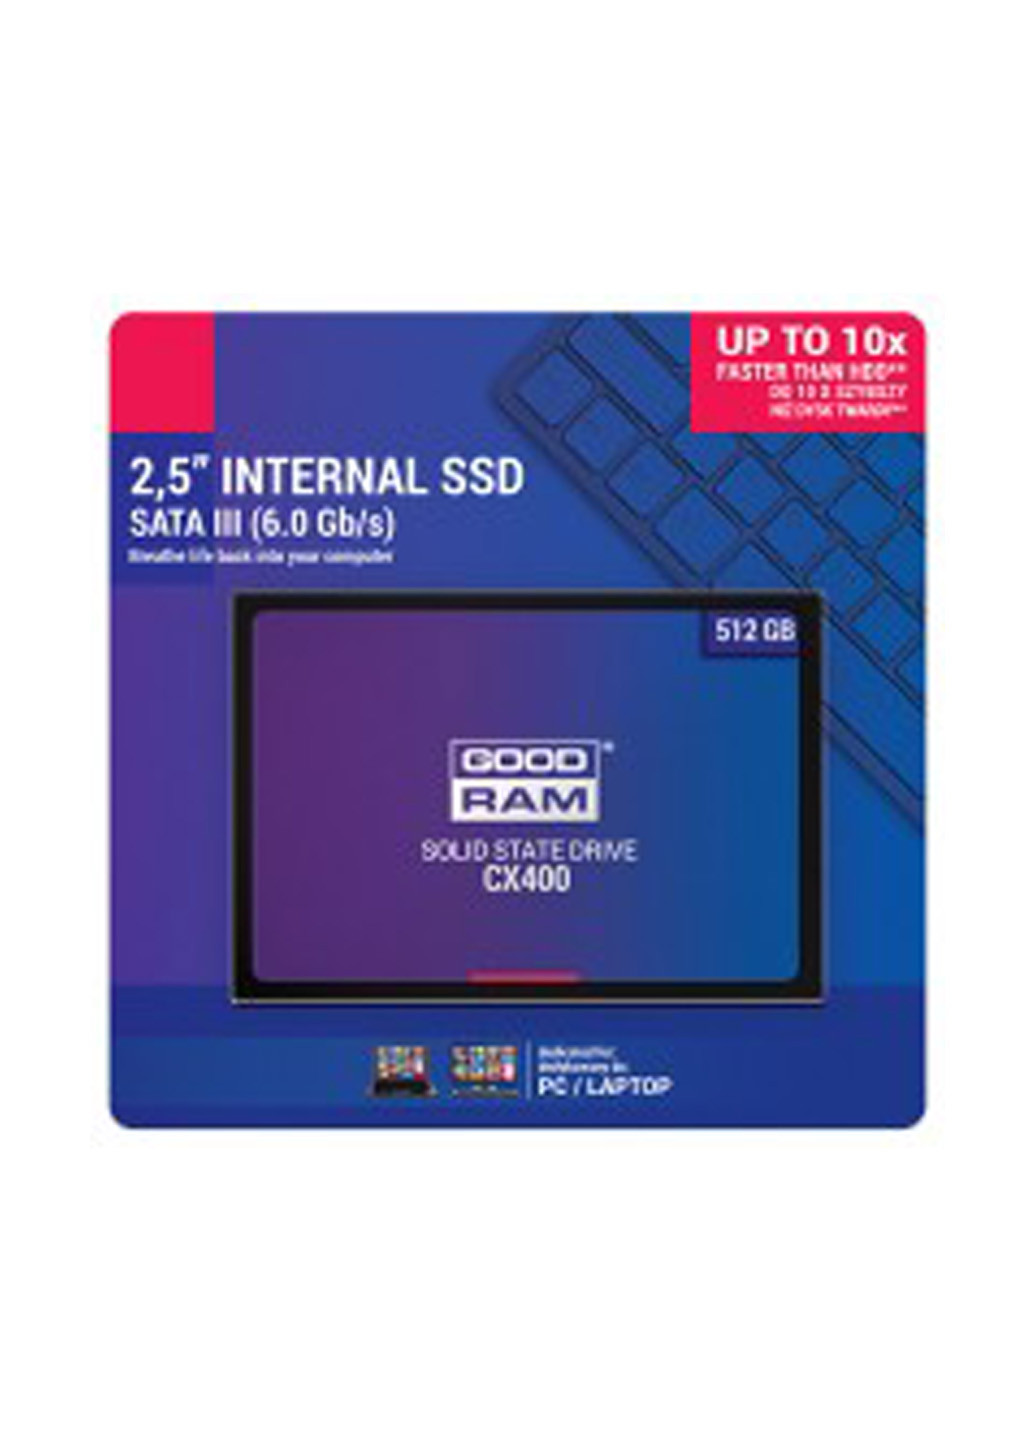 Внутренний SSD CX400 128GB 2.5" SATAIII 3D TLC (SSDPR-CX400-128) Goodram внутренний ssd goodram cx400 128gb 2.5" sataiii 3d tlc (ssdpr-cx400-128) (136893998)